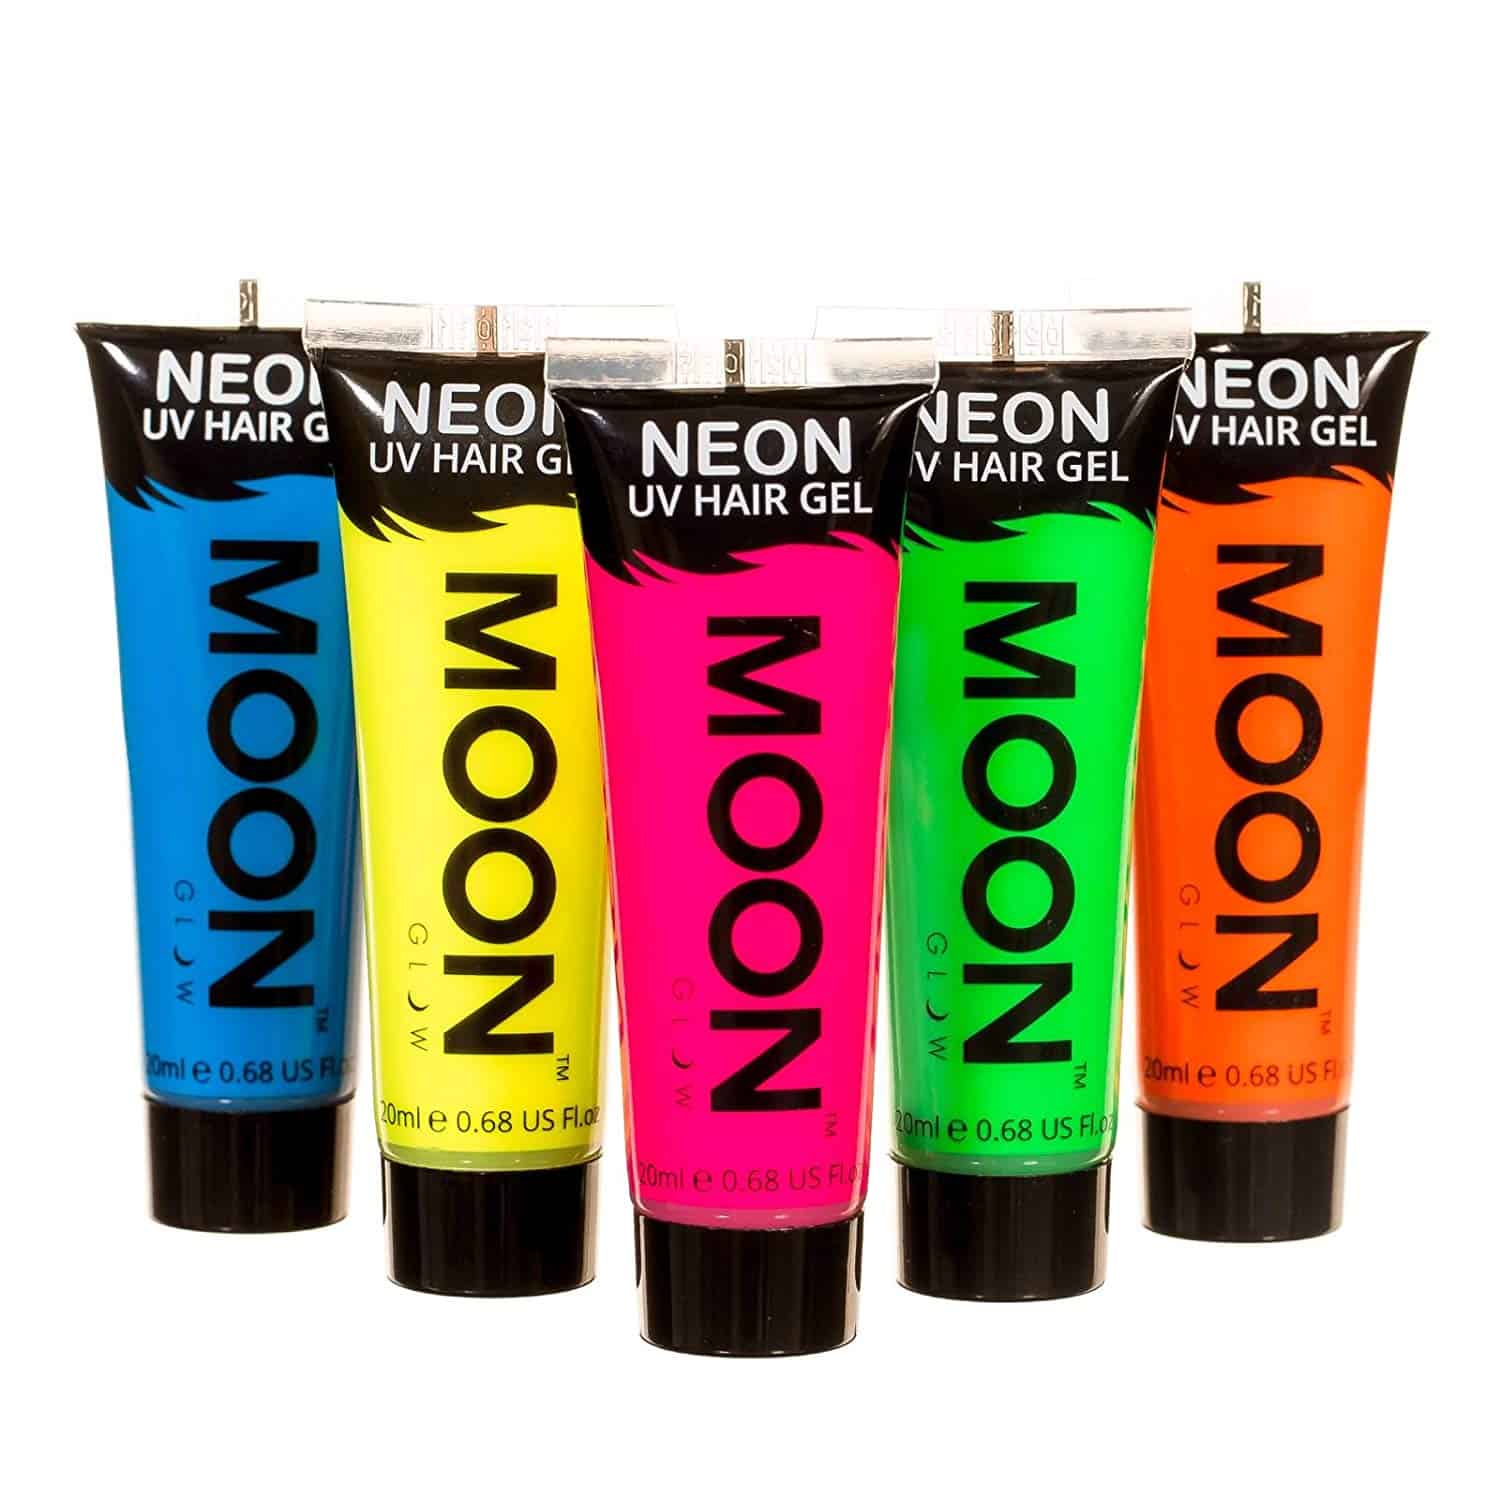 Moon Glow in the dark Neon UV Hair Gel - 20ml Set